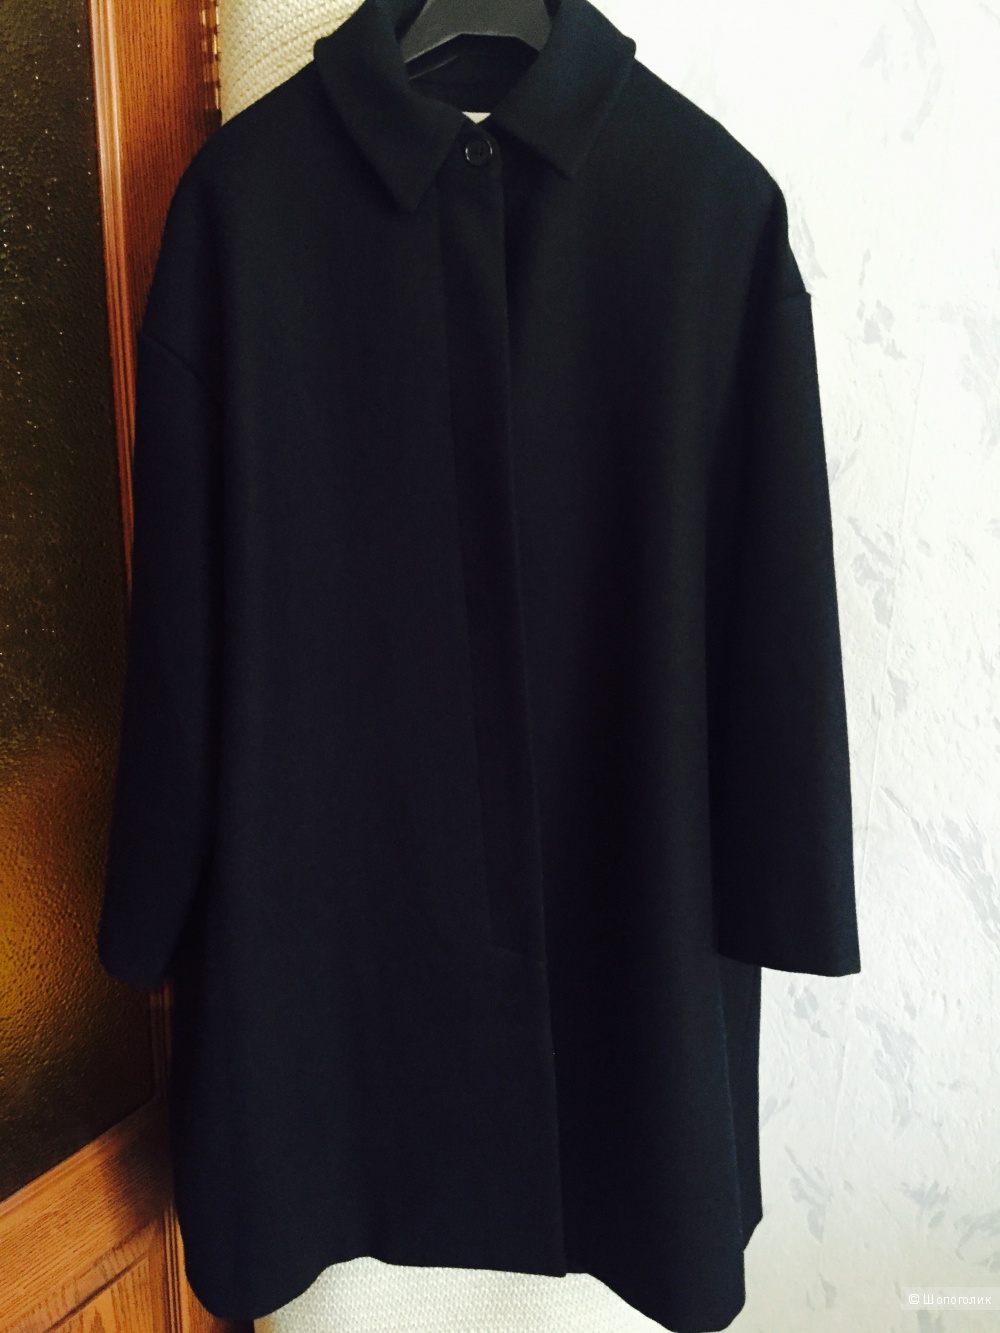 Пальто Barena Venezia oversize, черное, размер 44,46,48ру